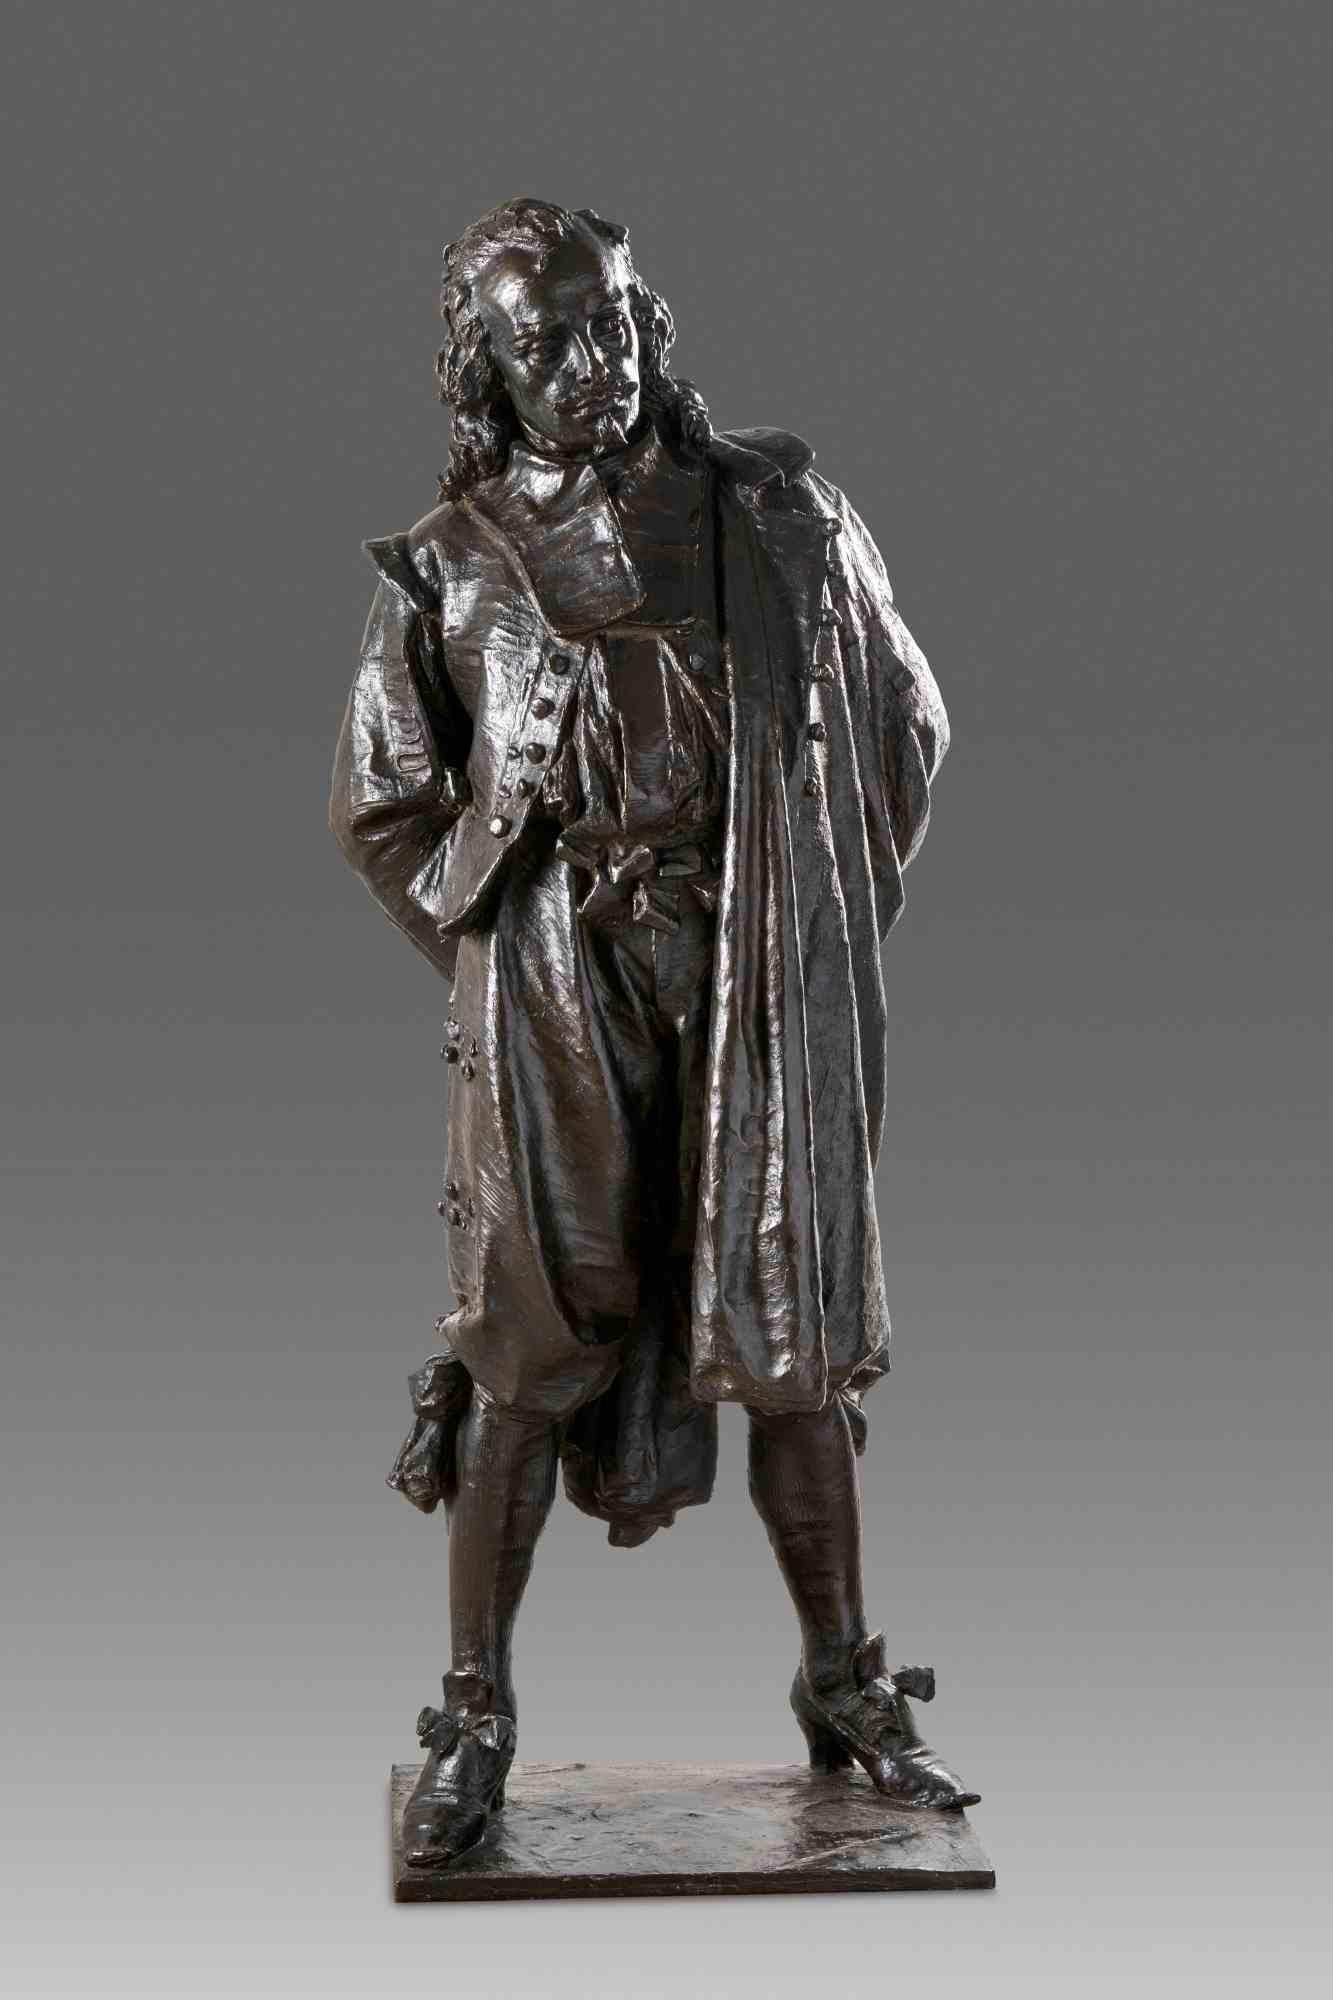 Die hier vorgeschlagene Bronze wurde ursprünglich im November 1878 beim Wettbewerb zur Förderung von Brera vorgestellt. Es handelt sich also um eines der ersten feierlichen Werke des Bildhauers Ambrogio Borghi. Das Werk wurde später auf der